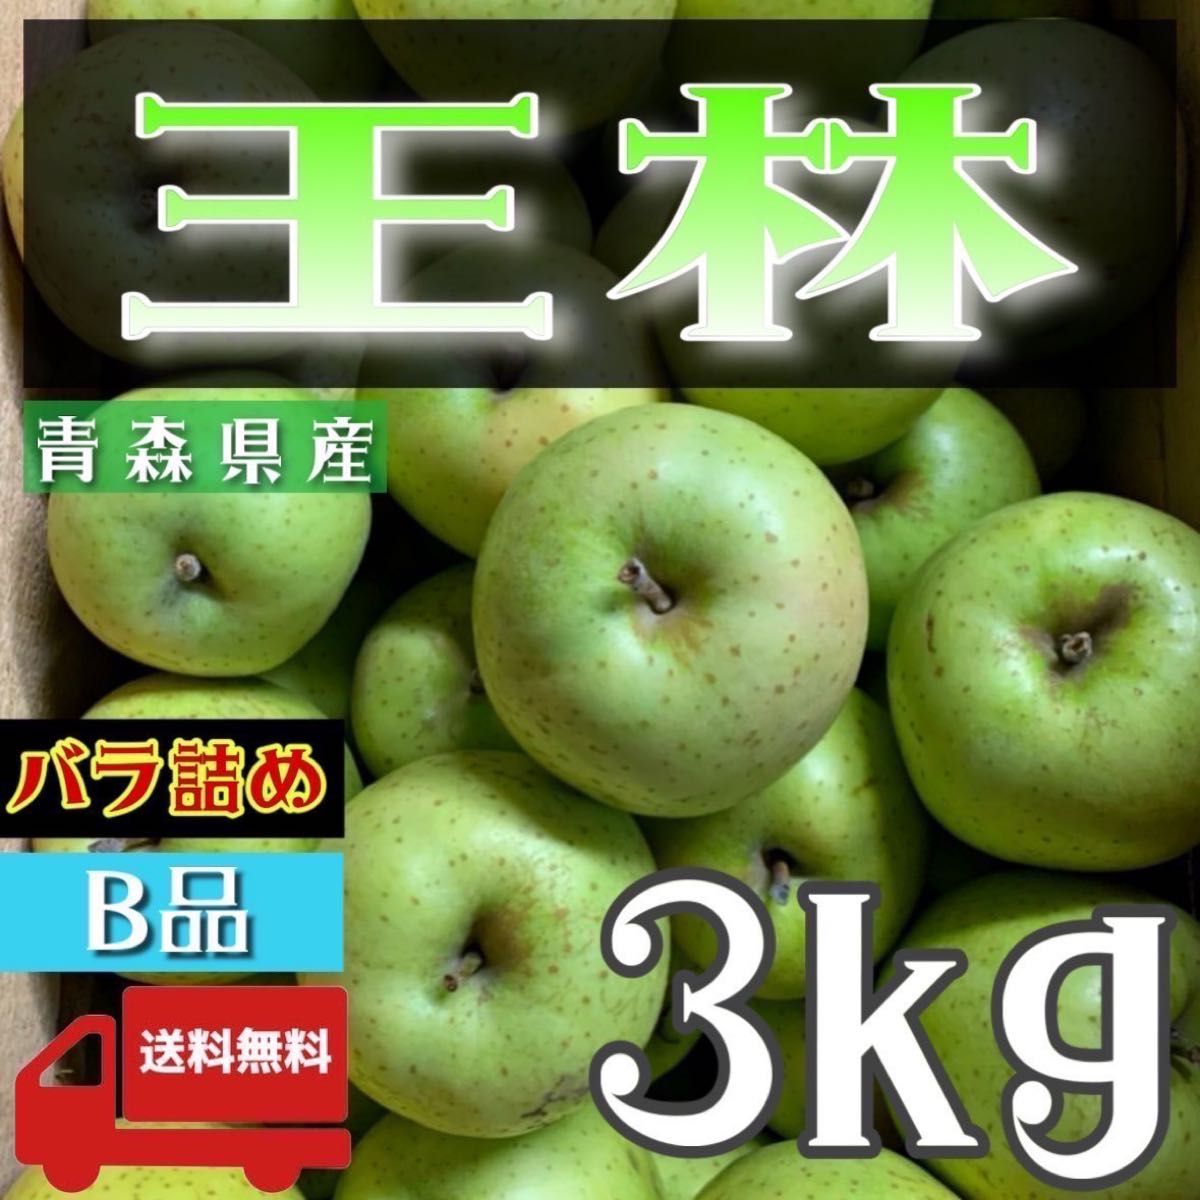 ＂ 王林 ＂【青森県産りんご3kg】【産地直送】【即購入OK】【送料無料】家庭用 りんご リンゴ  林檎